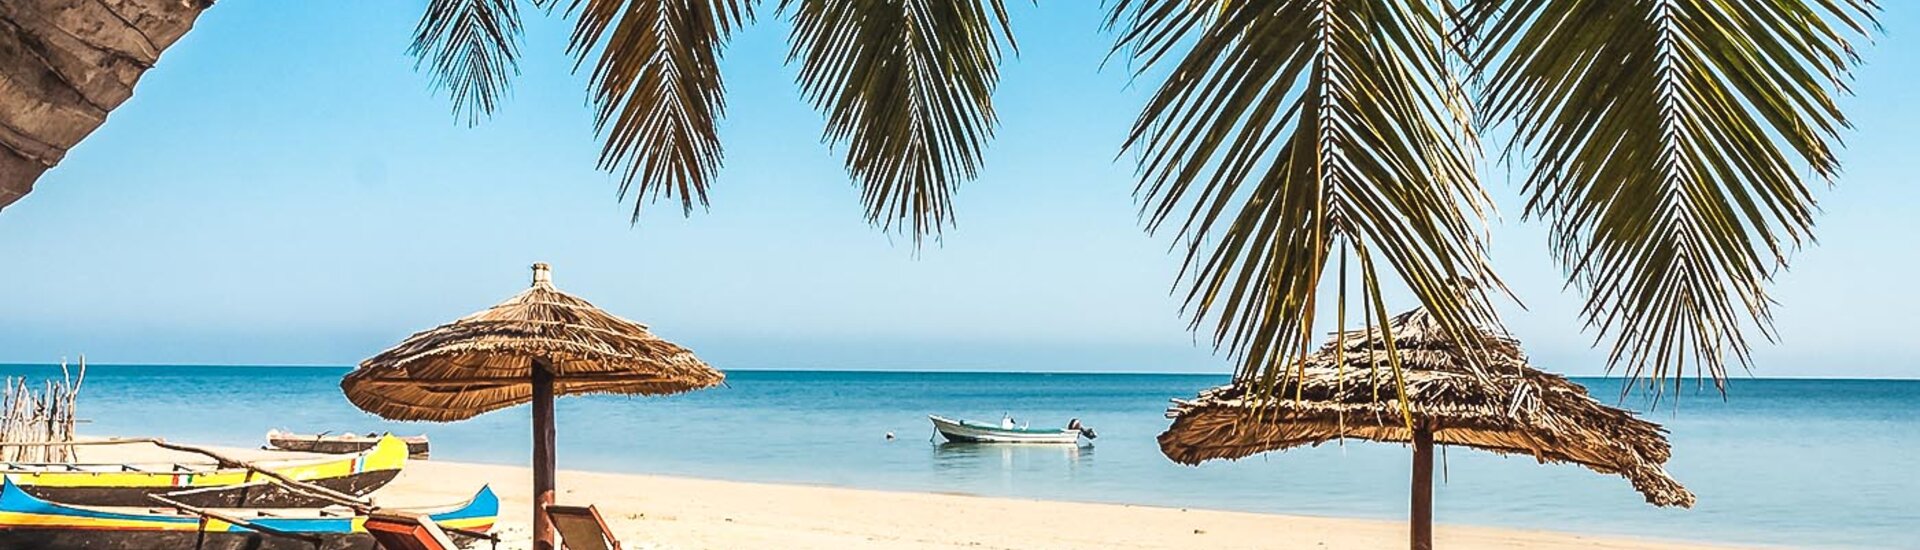 Strand von Ifaty in Madagaskar